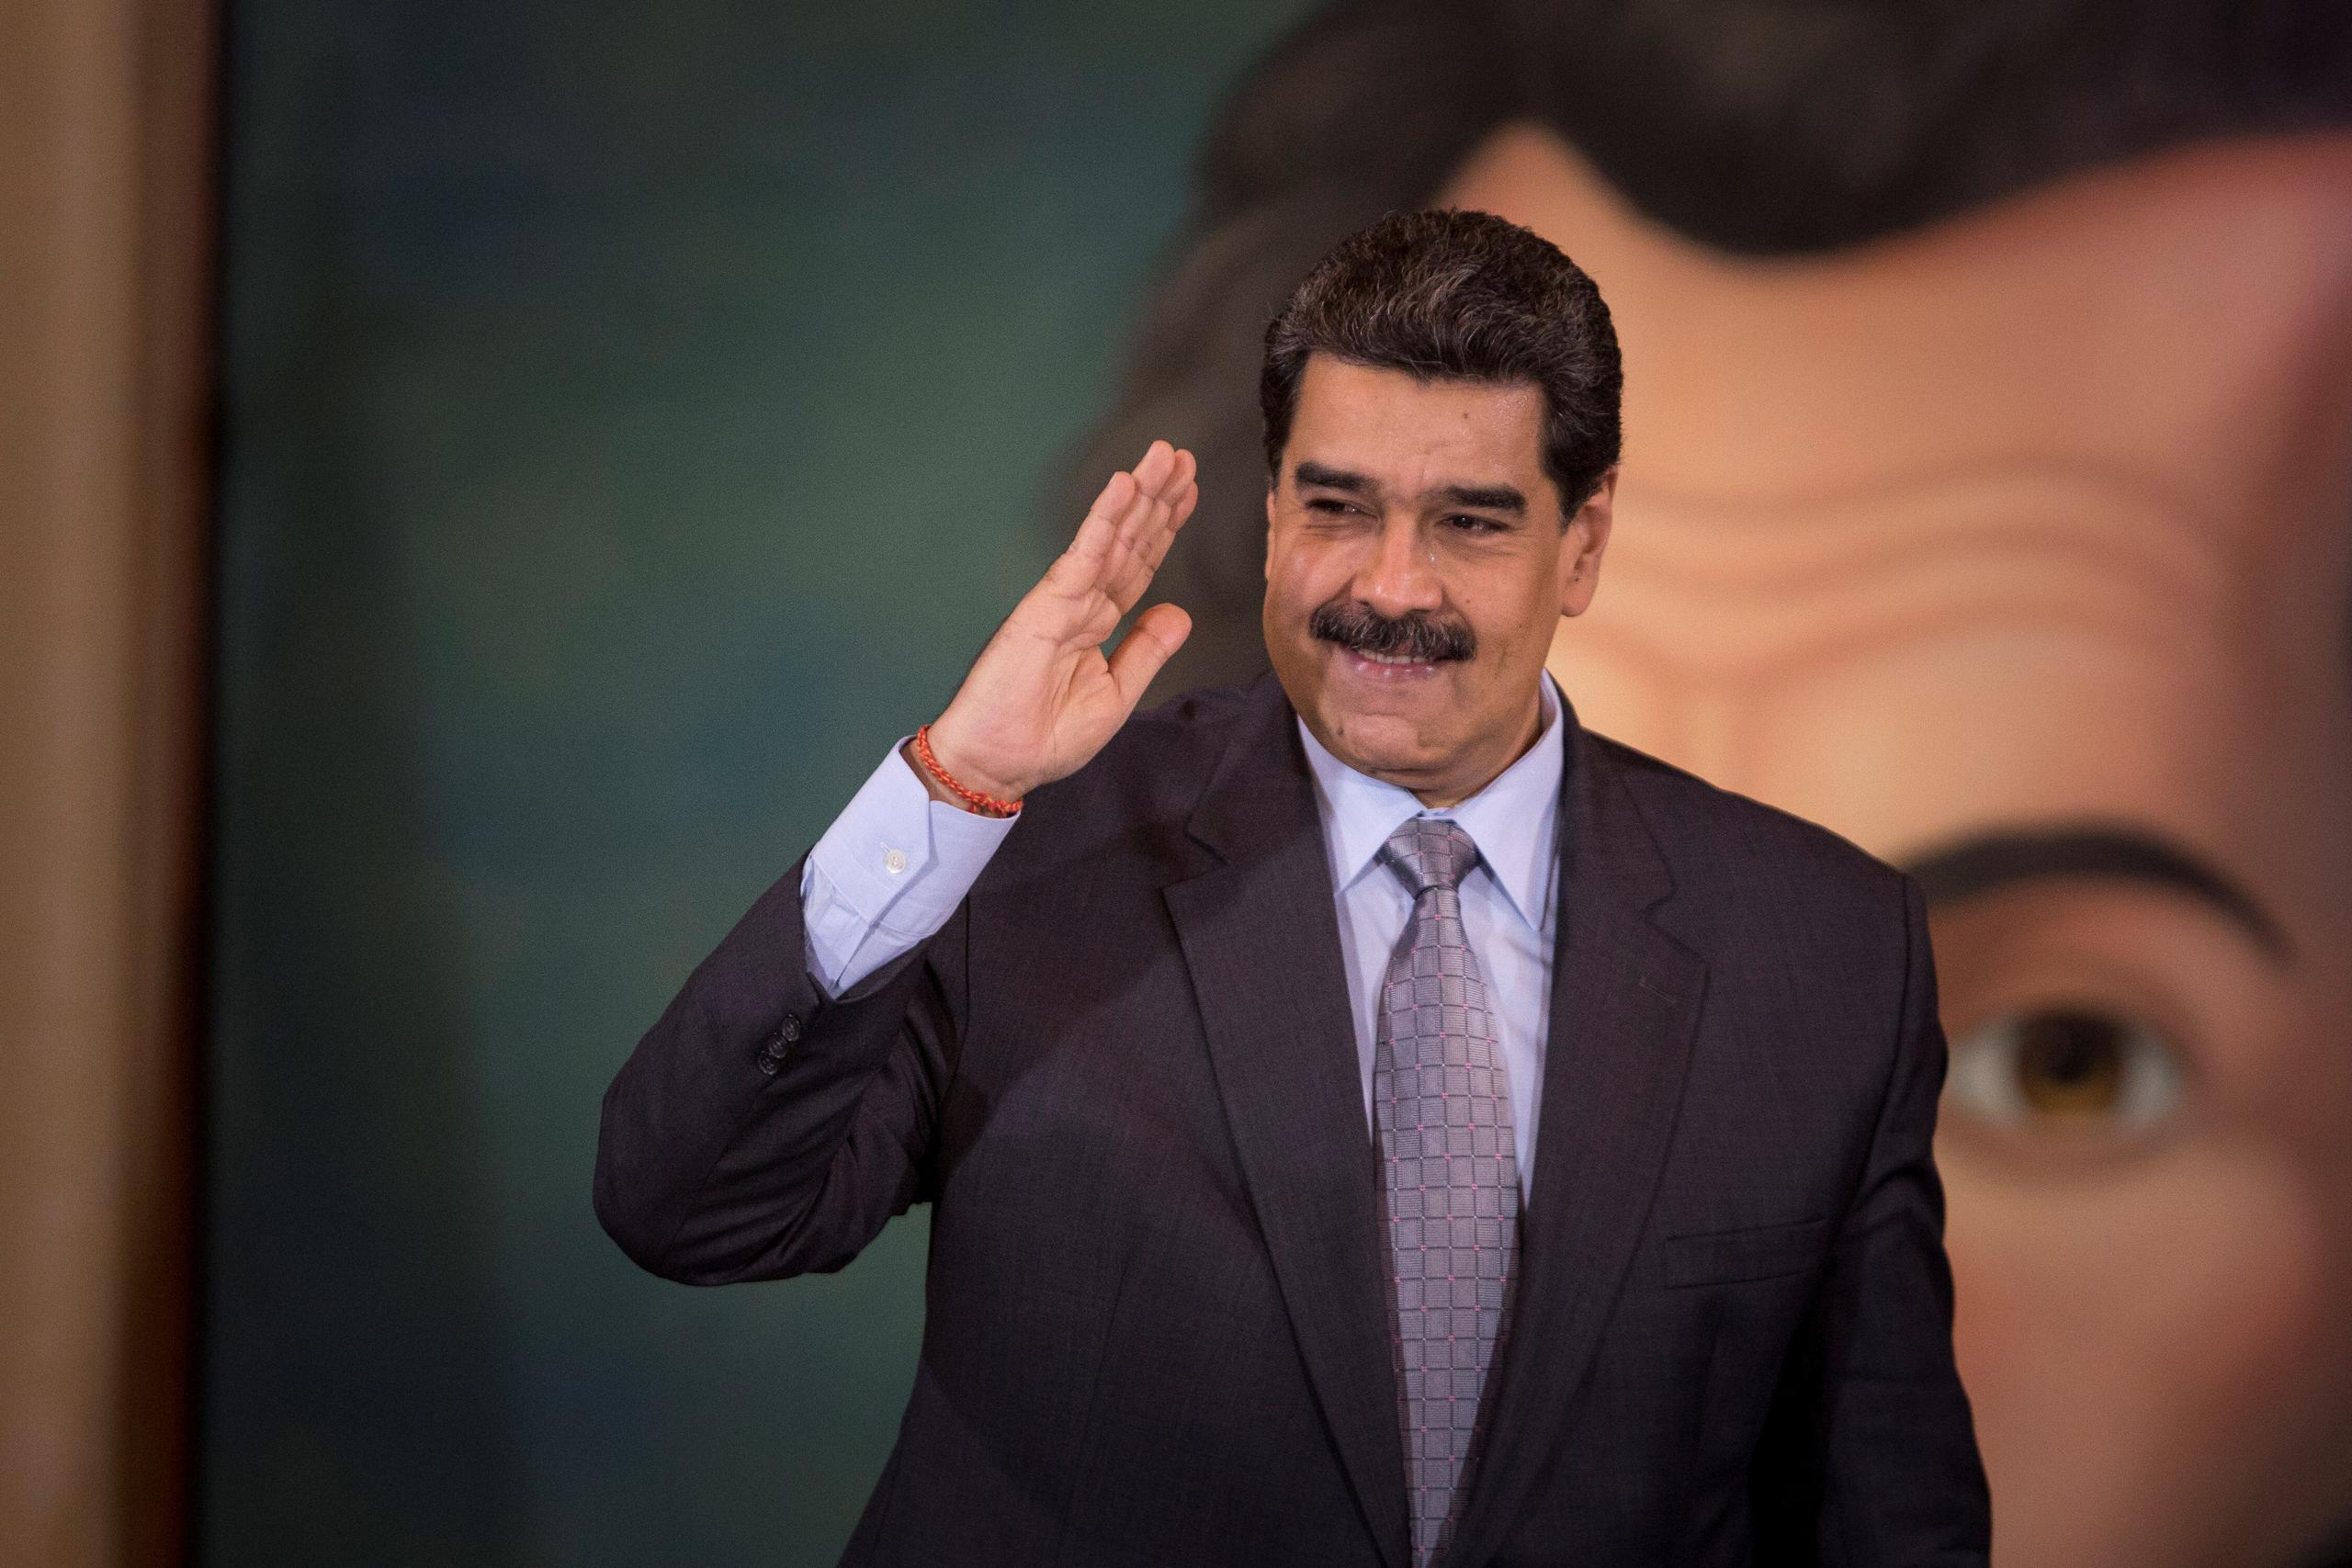 El presidente de Venezuela, Nicolás Maduro, saluda en Caracas, Venezuela.